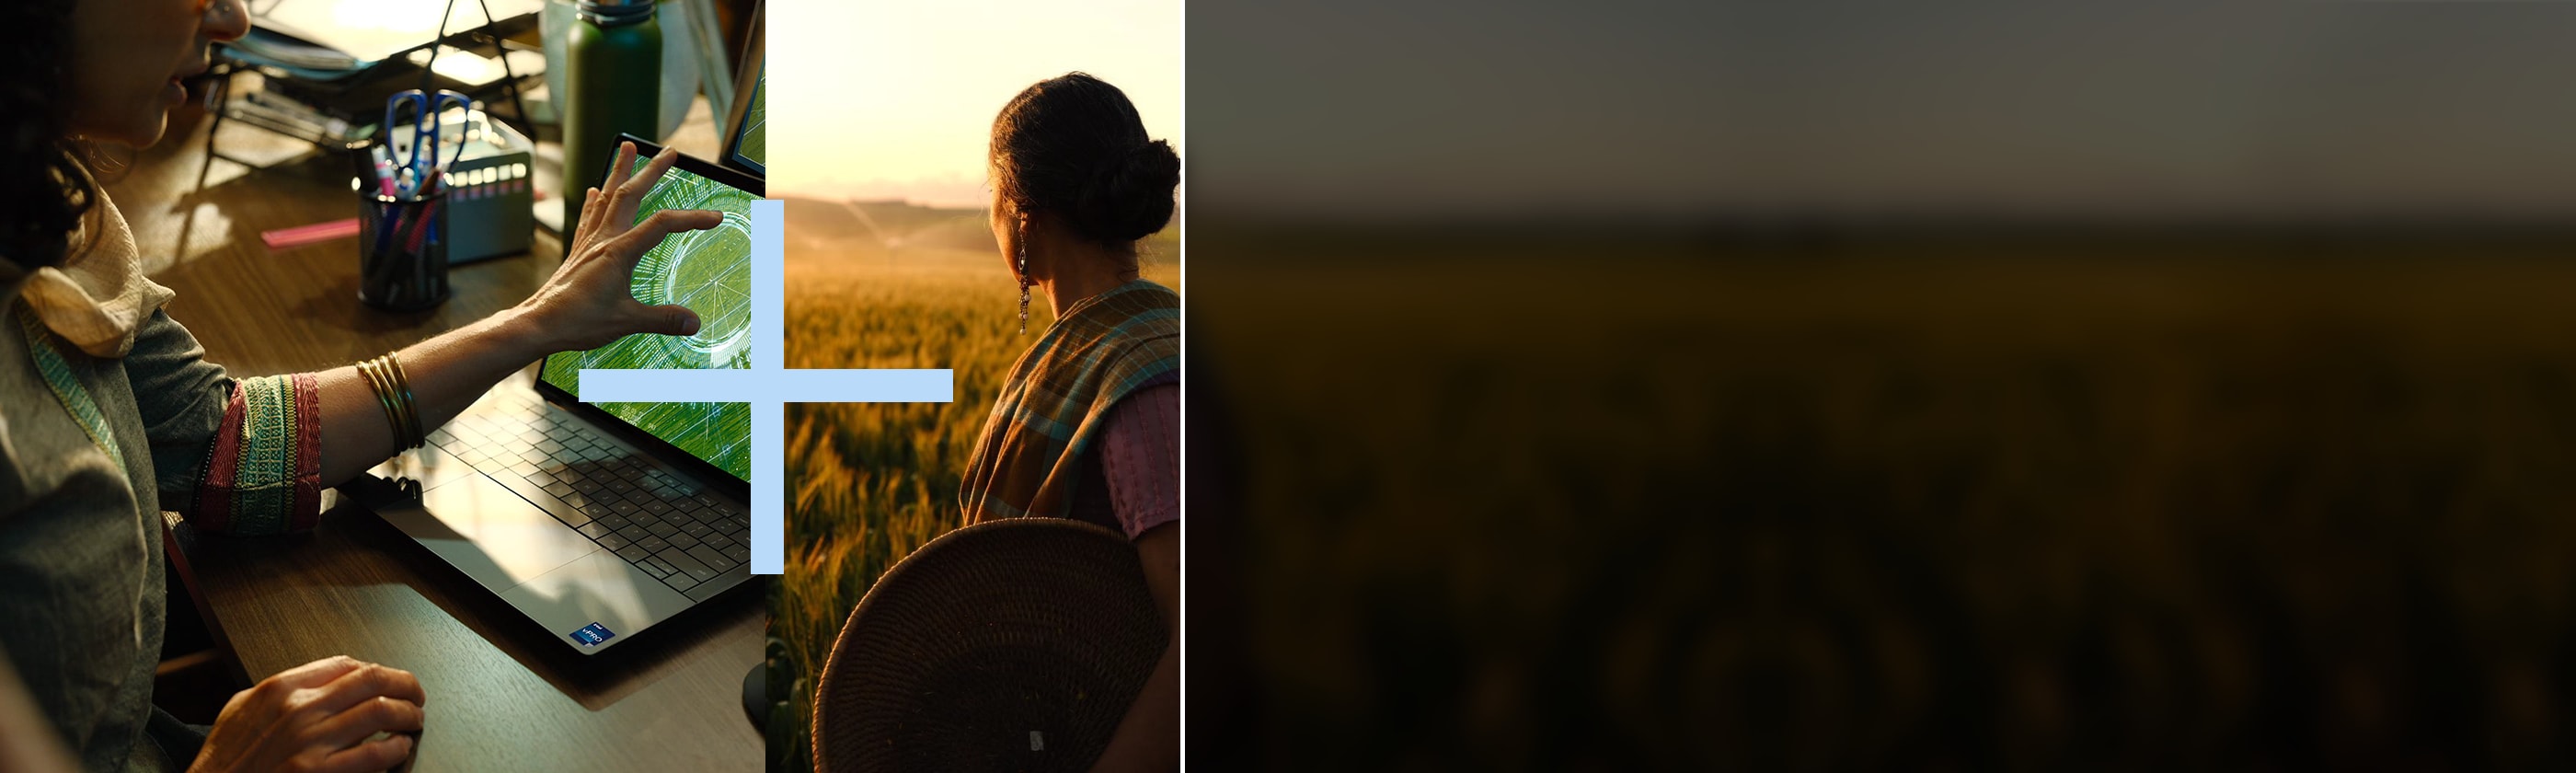 Links: Frau berührt den Bildschirm eines Dell Laptops. Rechts: Frau auf einem Feld, die den Horizont betrachtet.